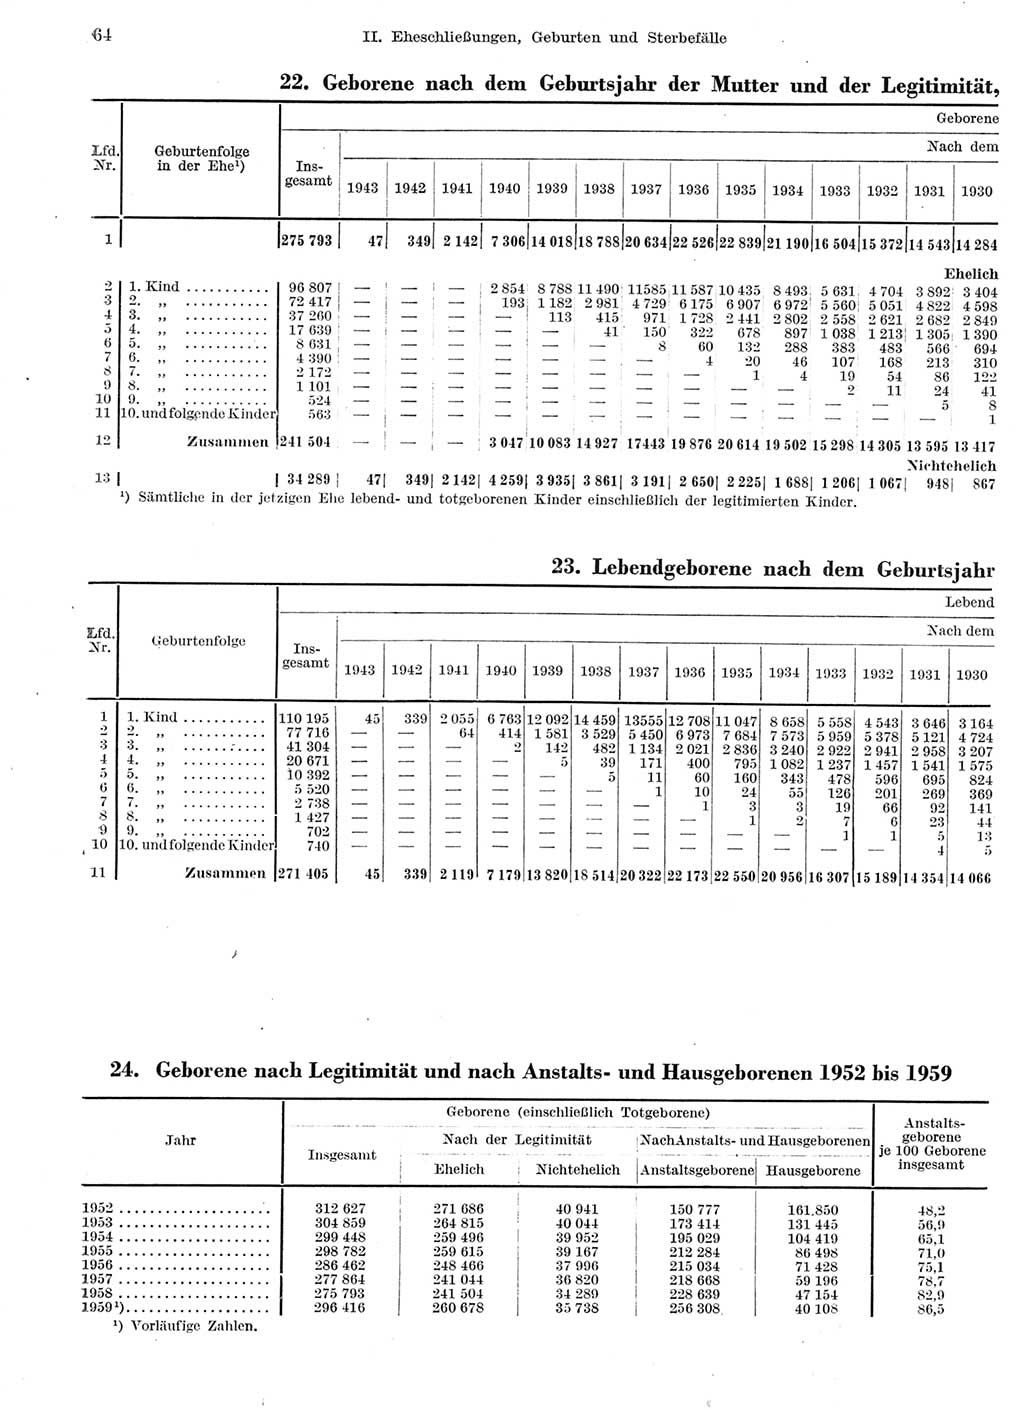 Statistisches Jahrbuch der Deutschen Demokratischen Republik (DDR) 1959, Seite 64 (Stat. Jb. DDR 1959, S. 64)